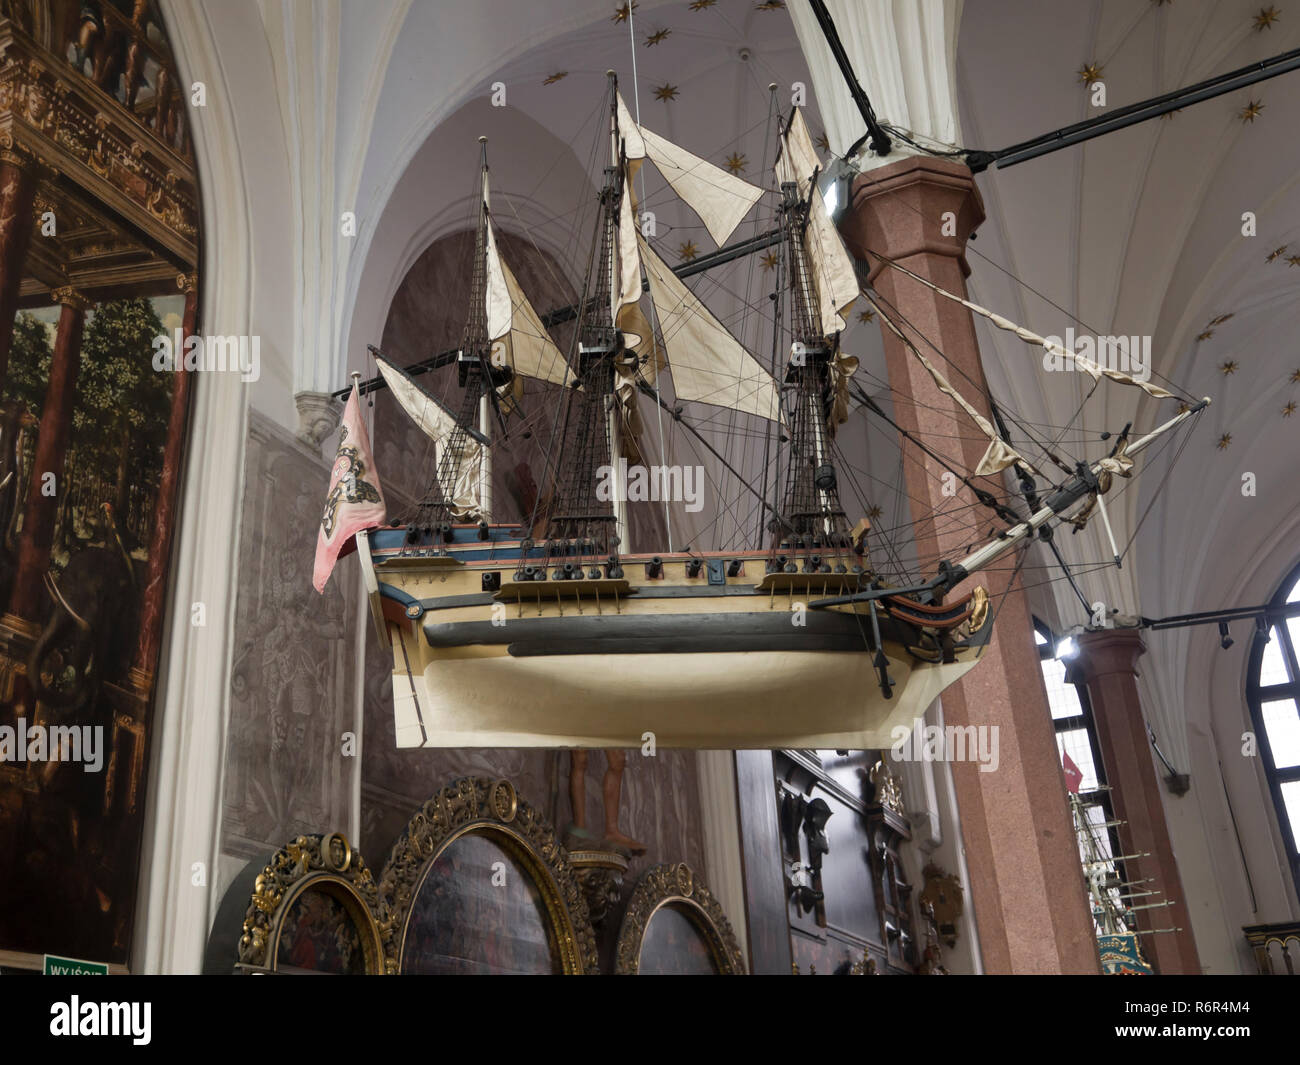 A Artus Court Museum en Gdansk, Polonia, una visita obligada para los turistas, vista interior mirando hacia uno de los muchos modelos de barco en el salón Foto de stock